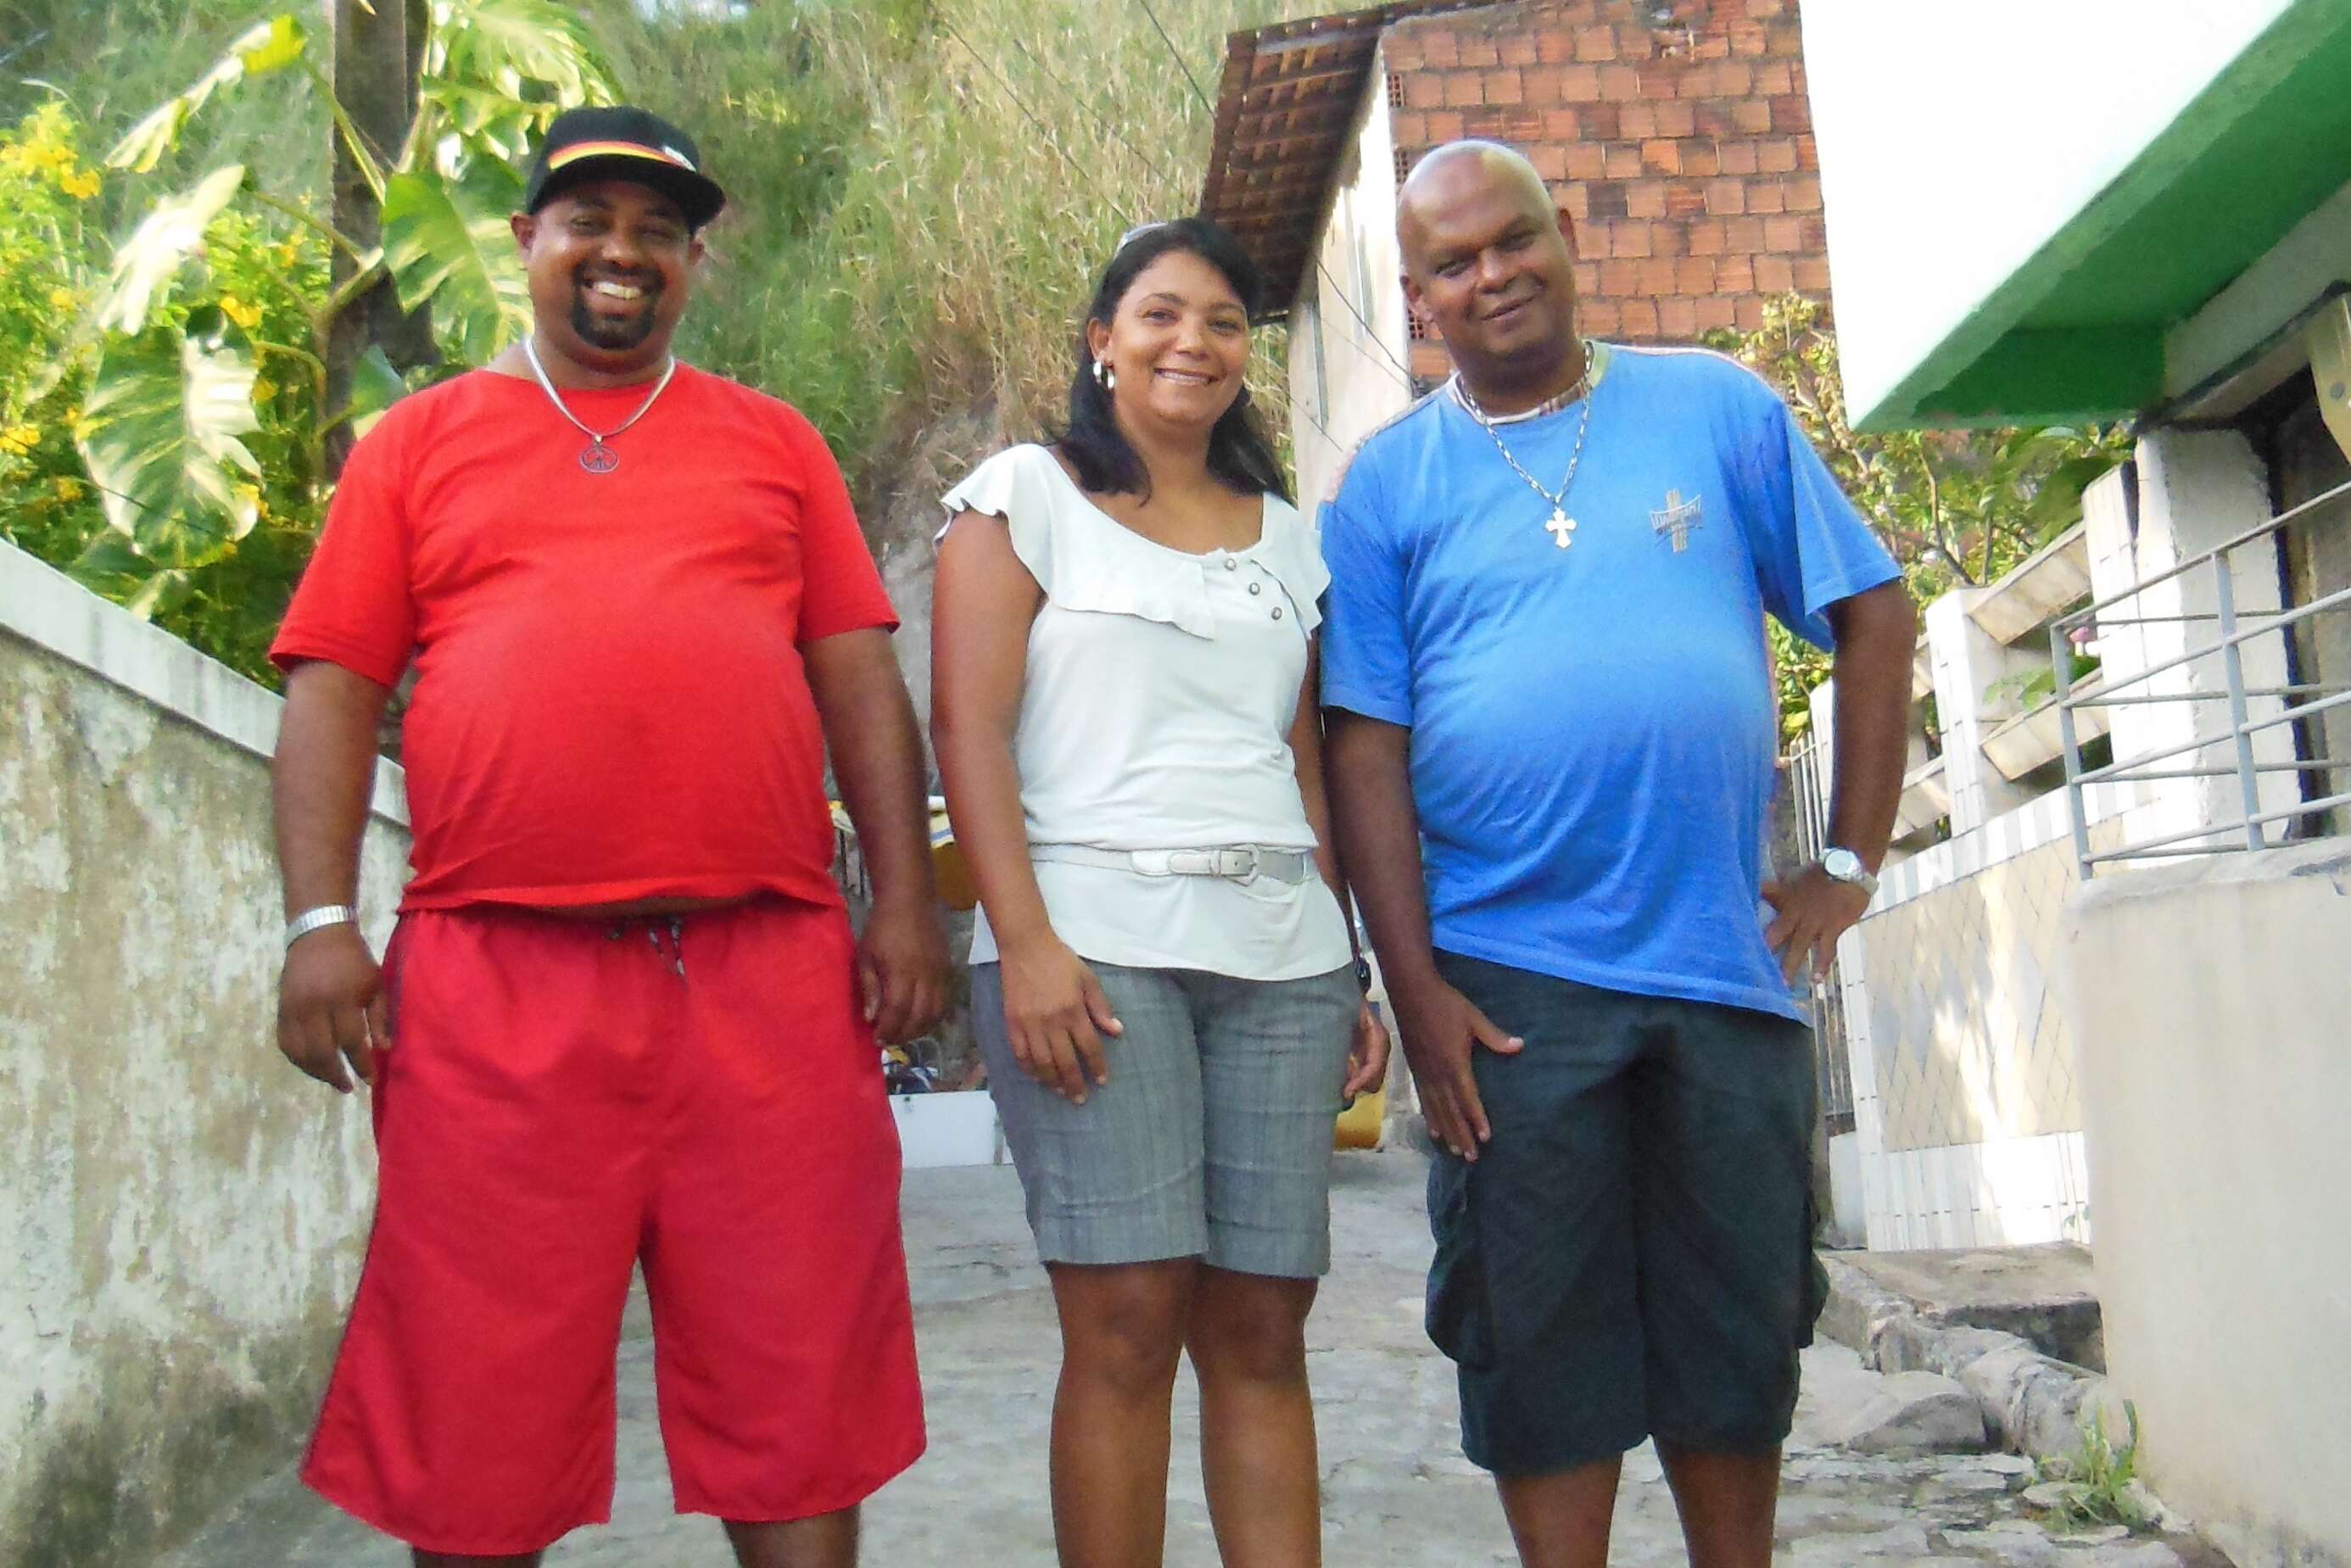 Cleones, Silvia e Antonio, microempreendedores do bairro da Bomba do Hemetério em Recife-PE